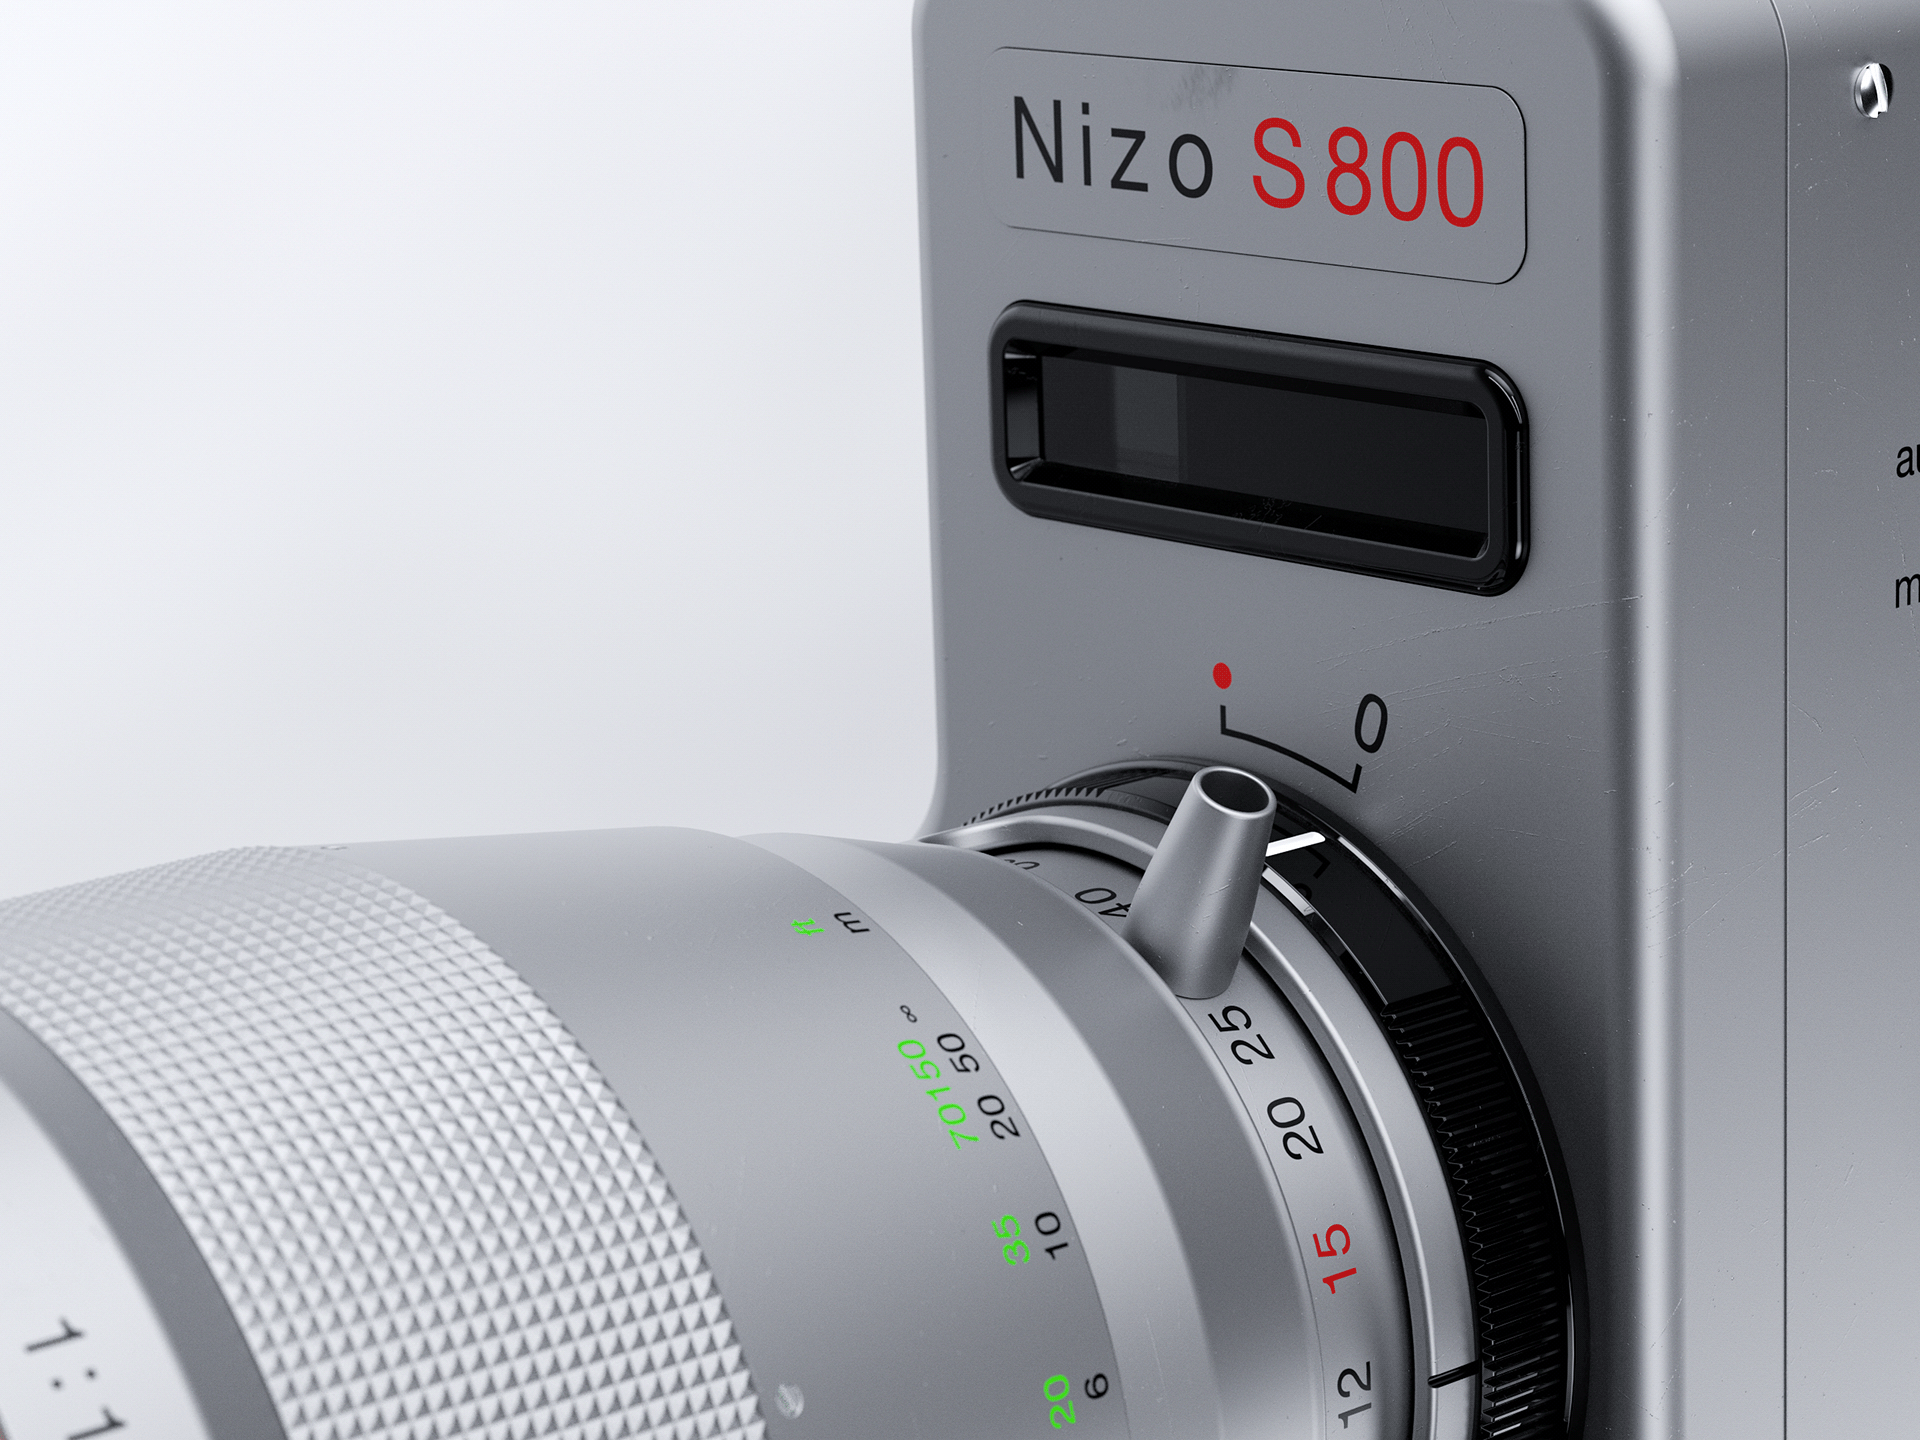 Nizo S 800 Braun Super 8 built-in 3D - Digital Art